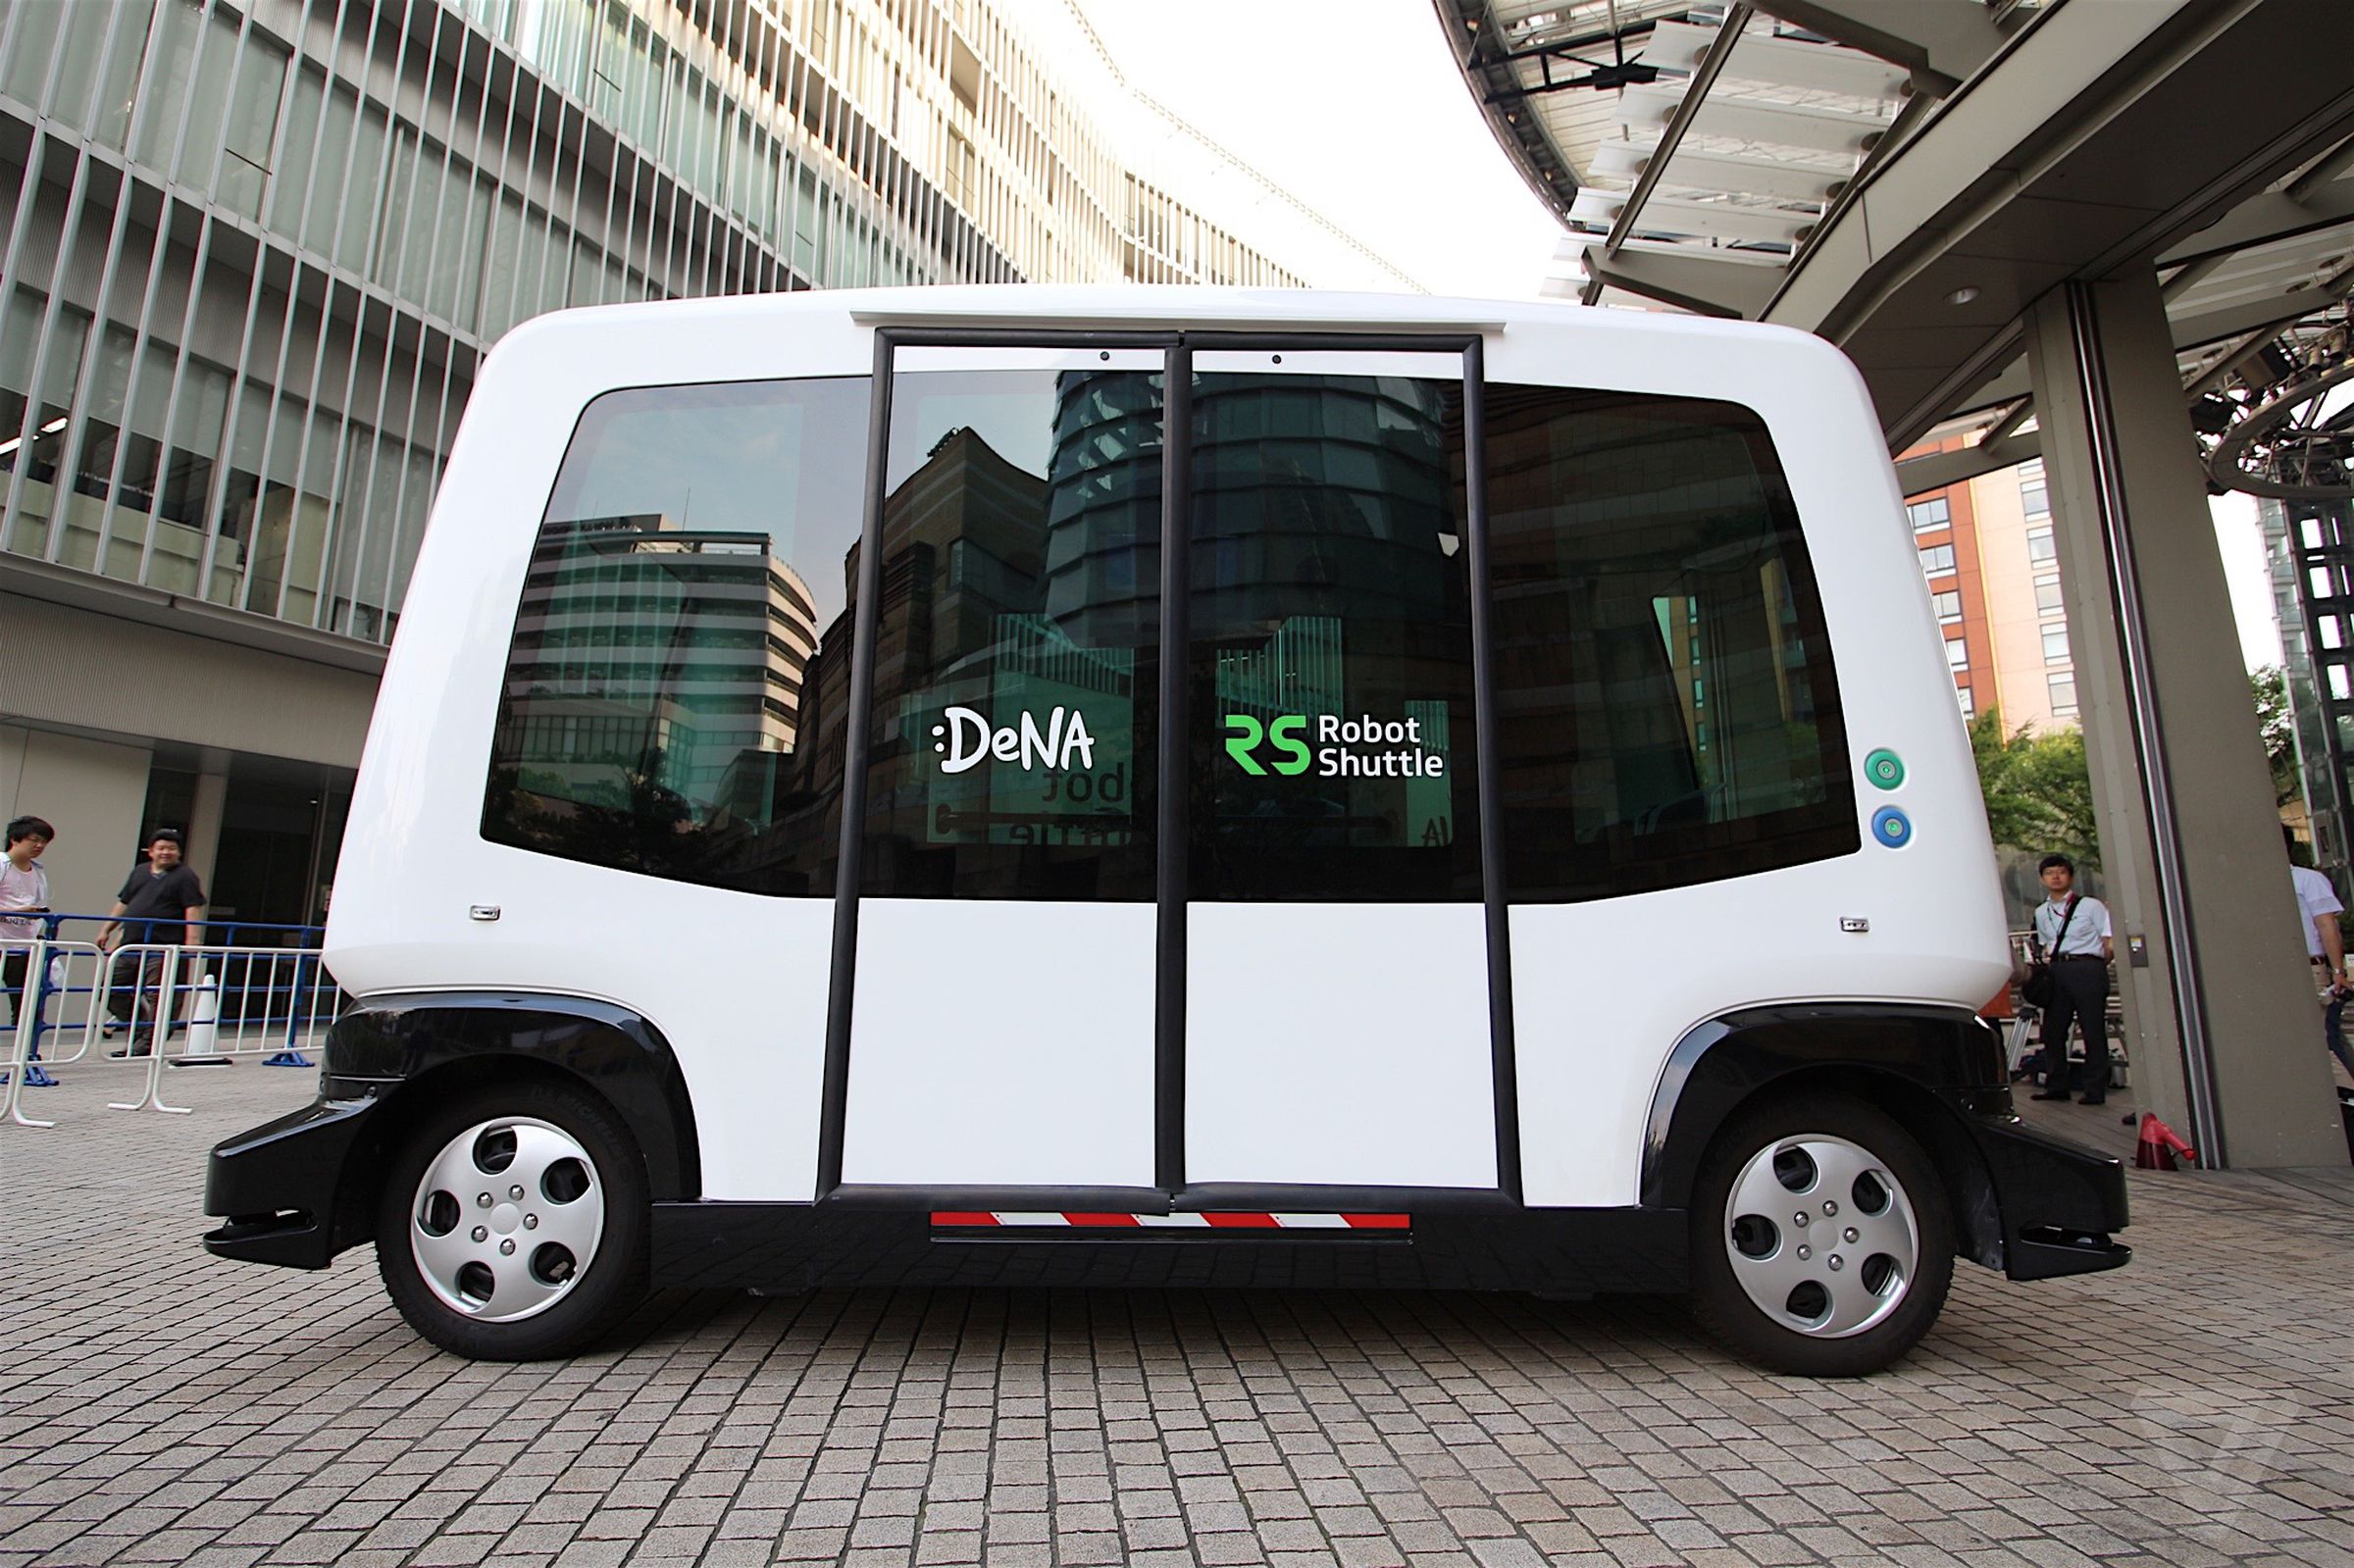 DeNA Robot Shuttle self-driving bus photos